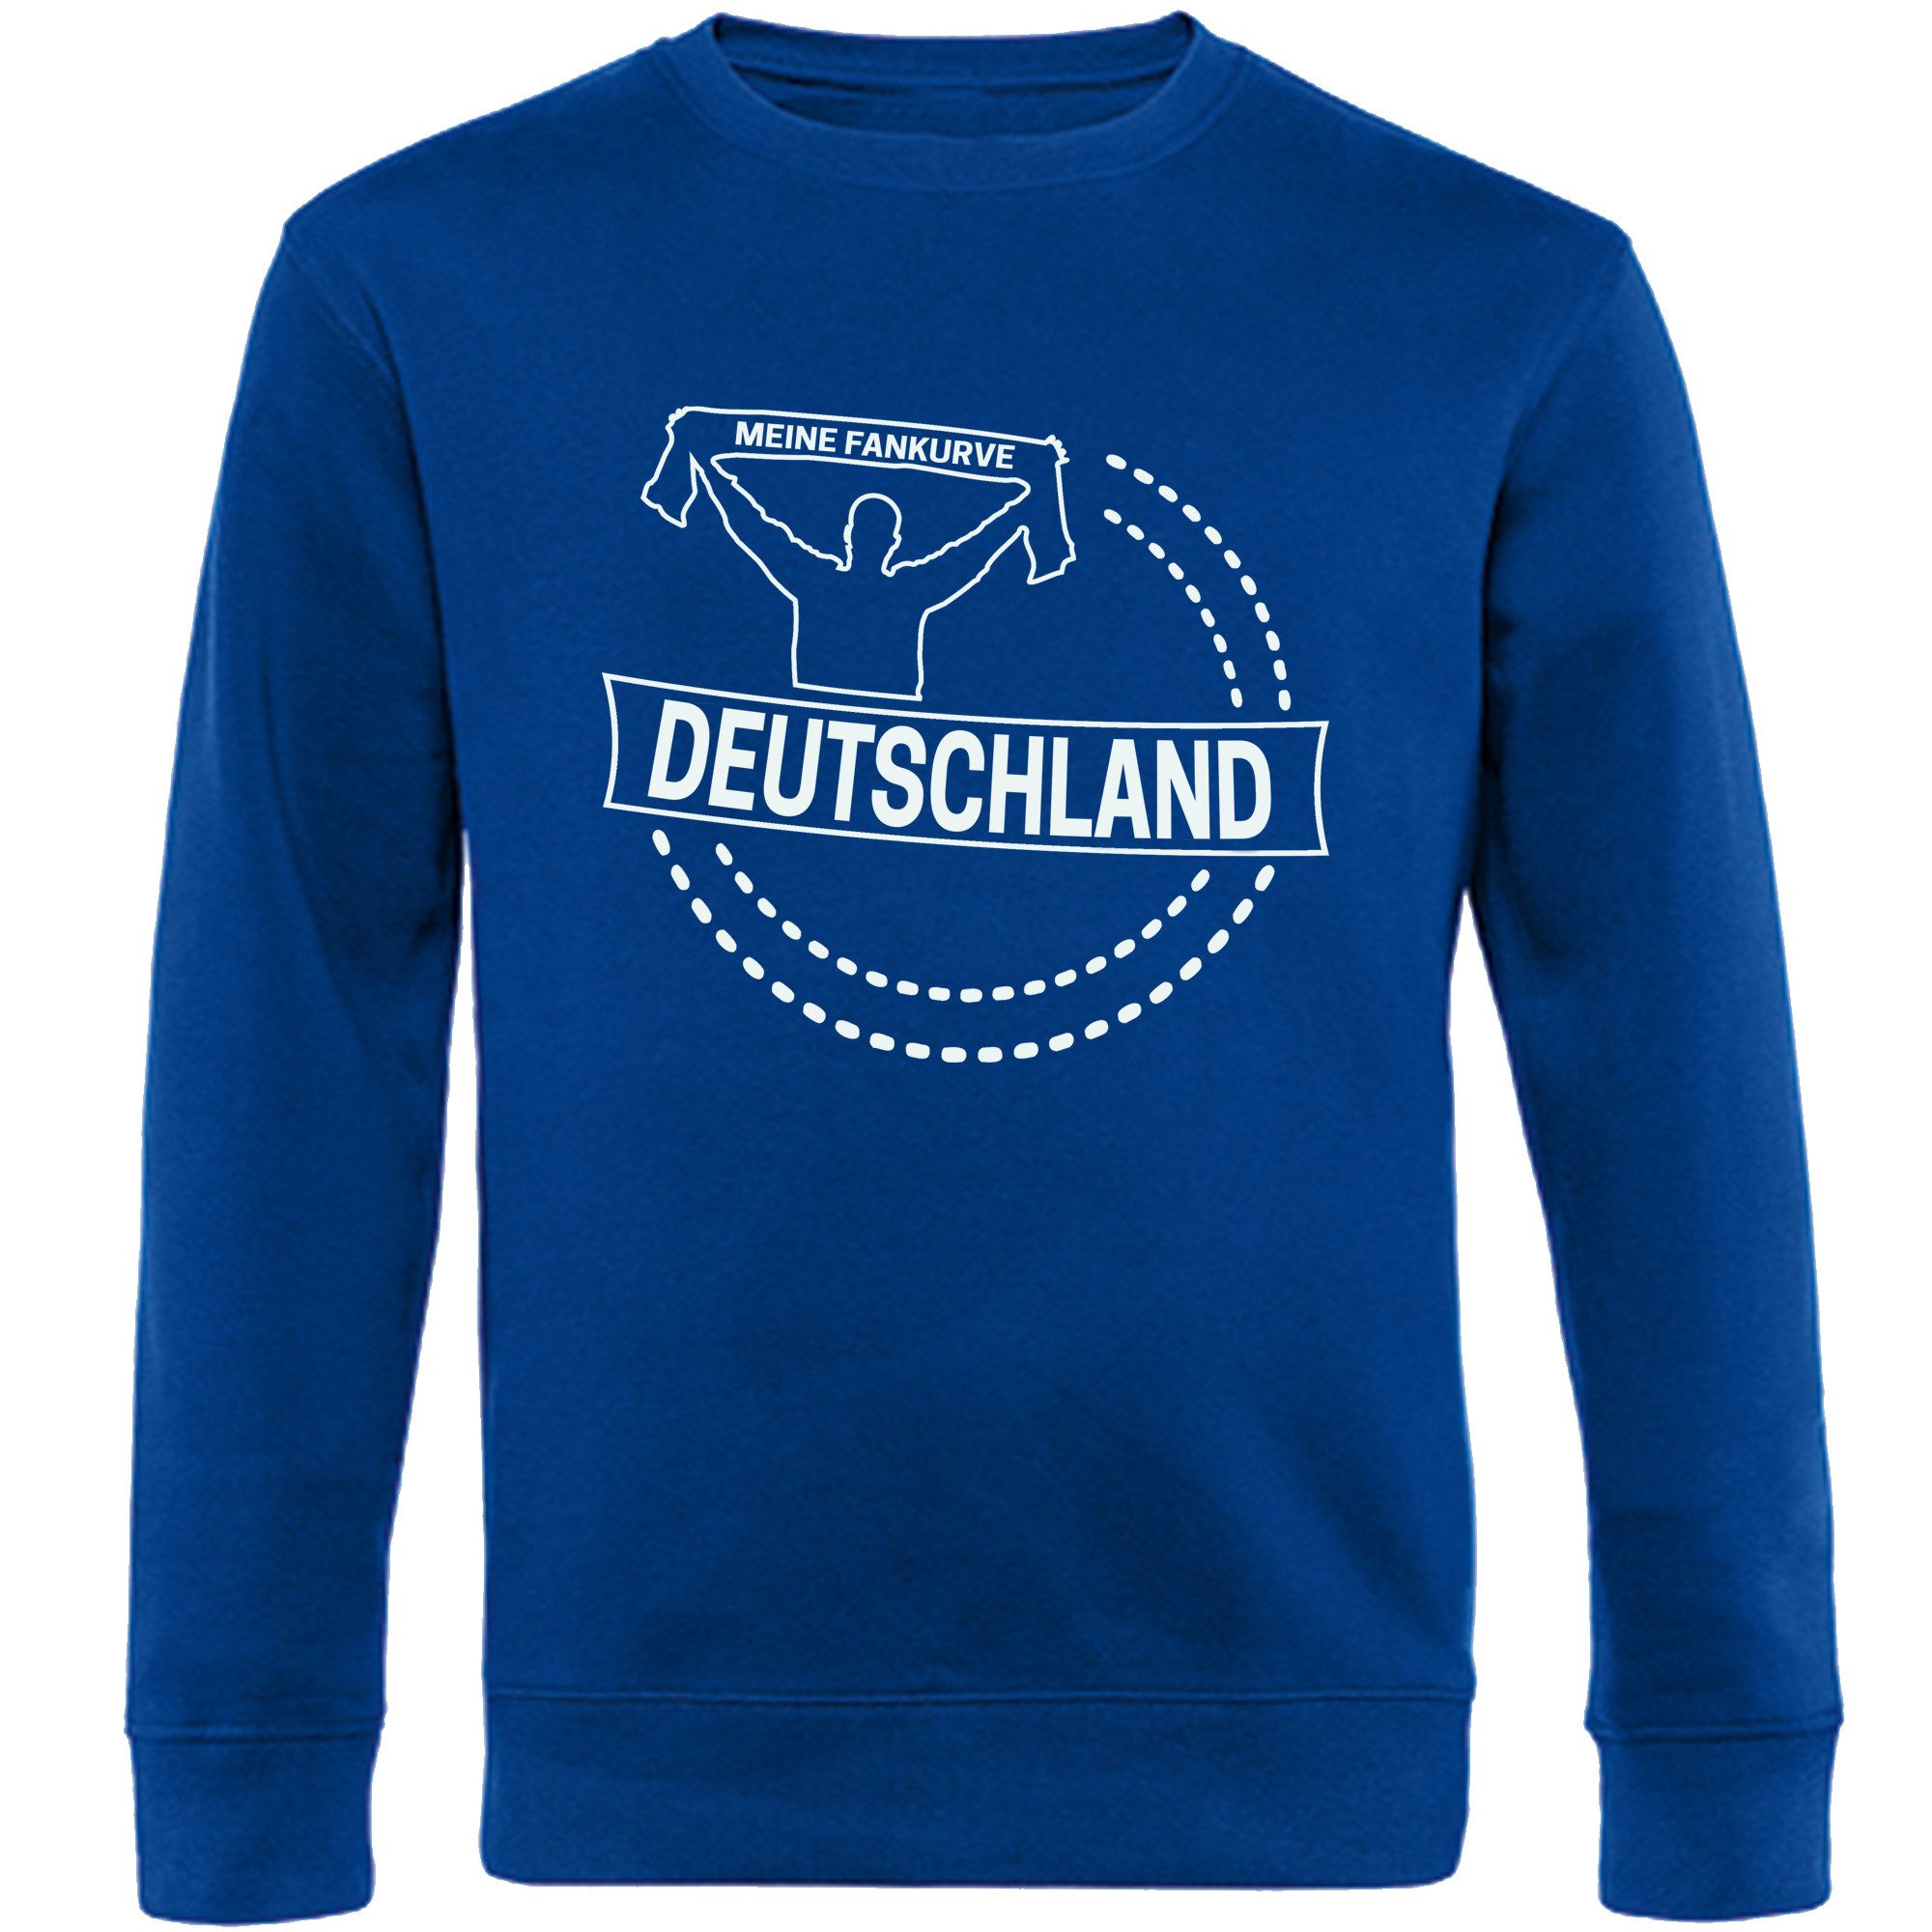 multifanshop Sweatshirt Deutschland - Meine Fankurve - Pullover